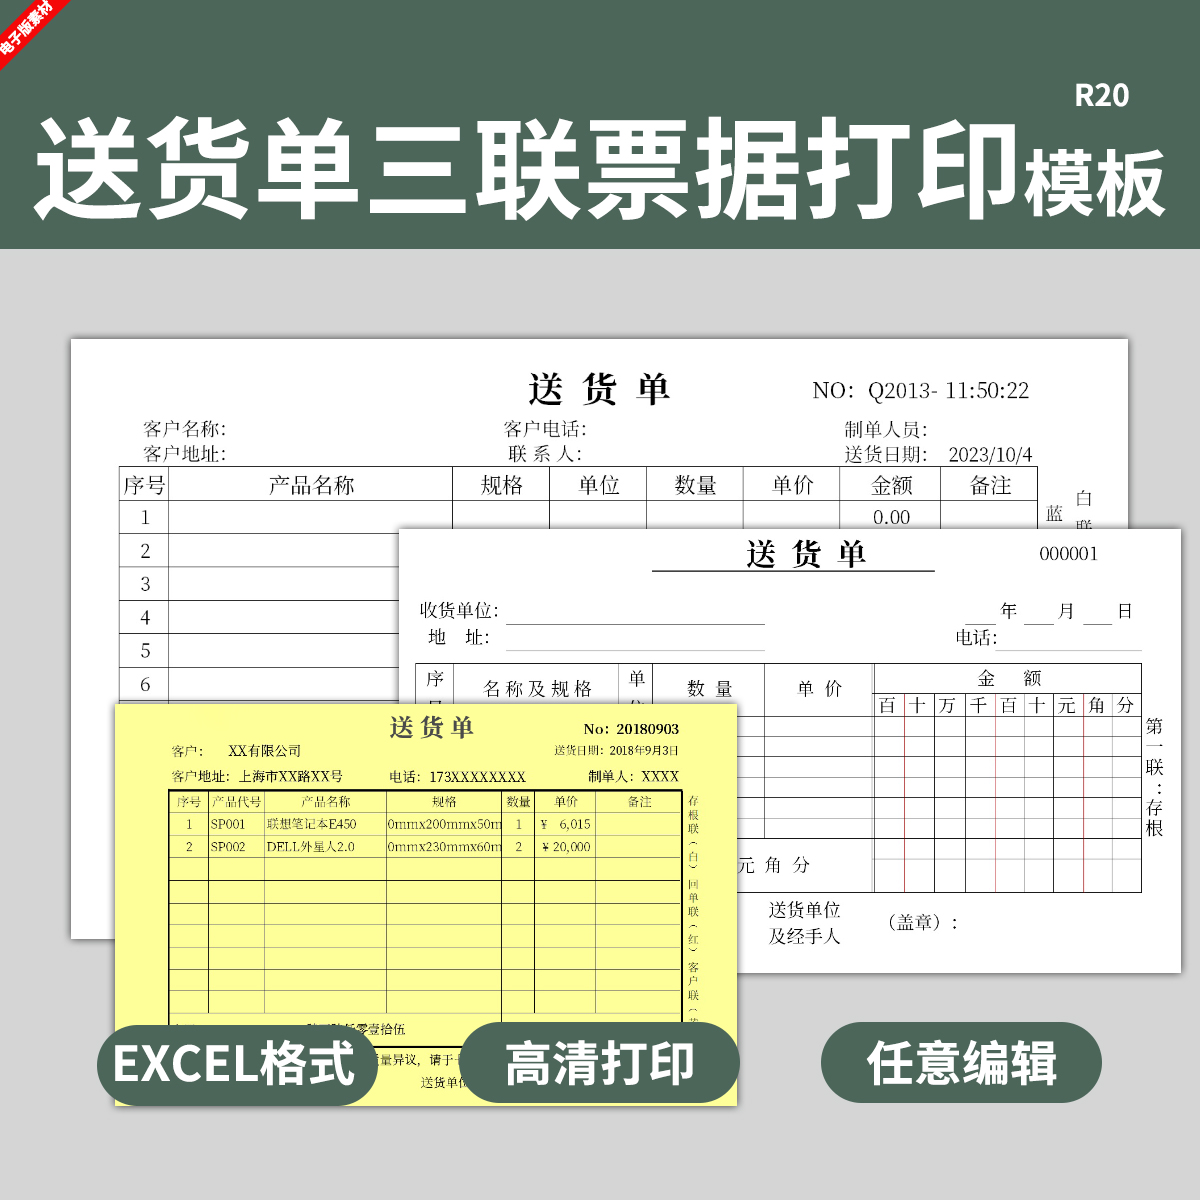 三联送货单收据打印模板发货单表格仓库销售采购二联电子版票据